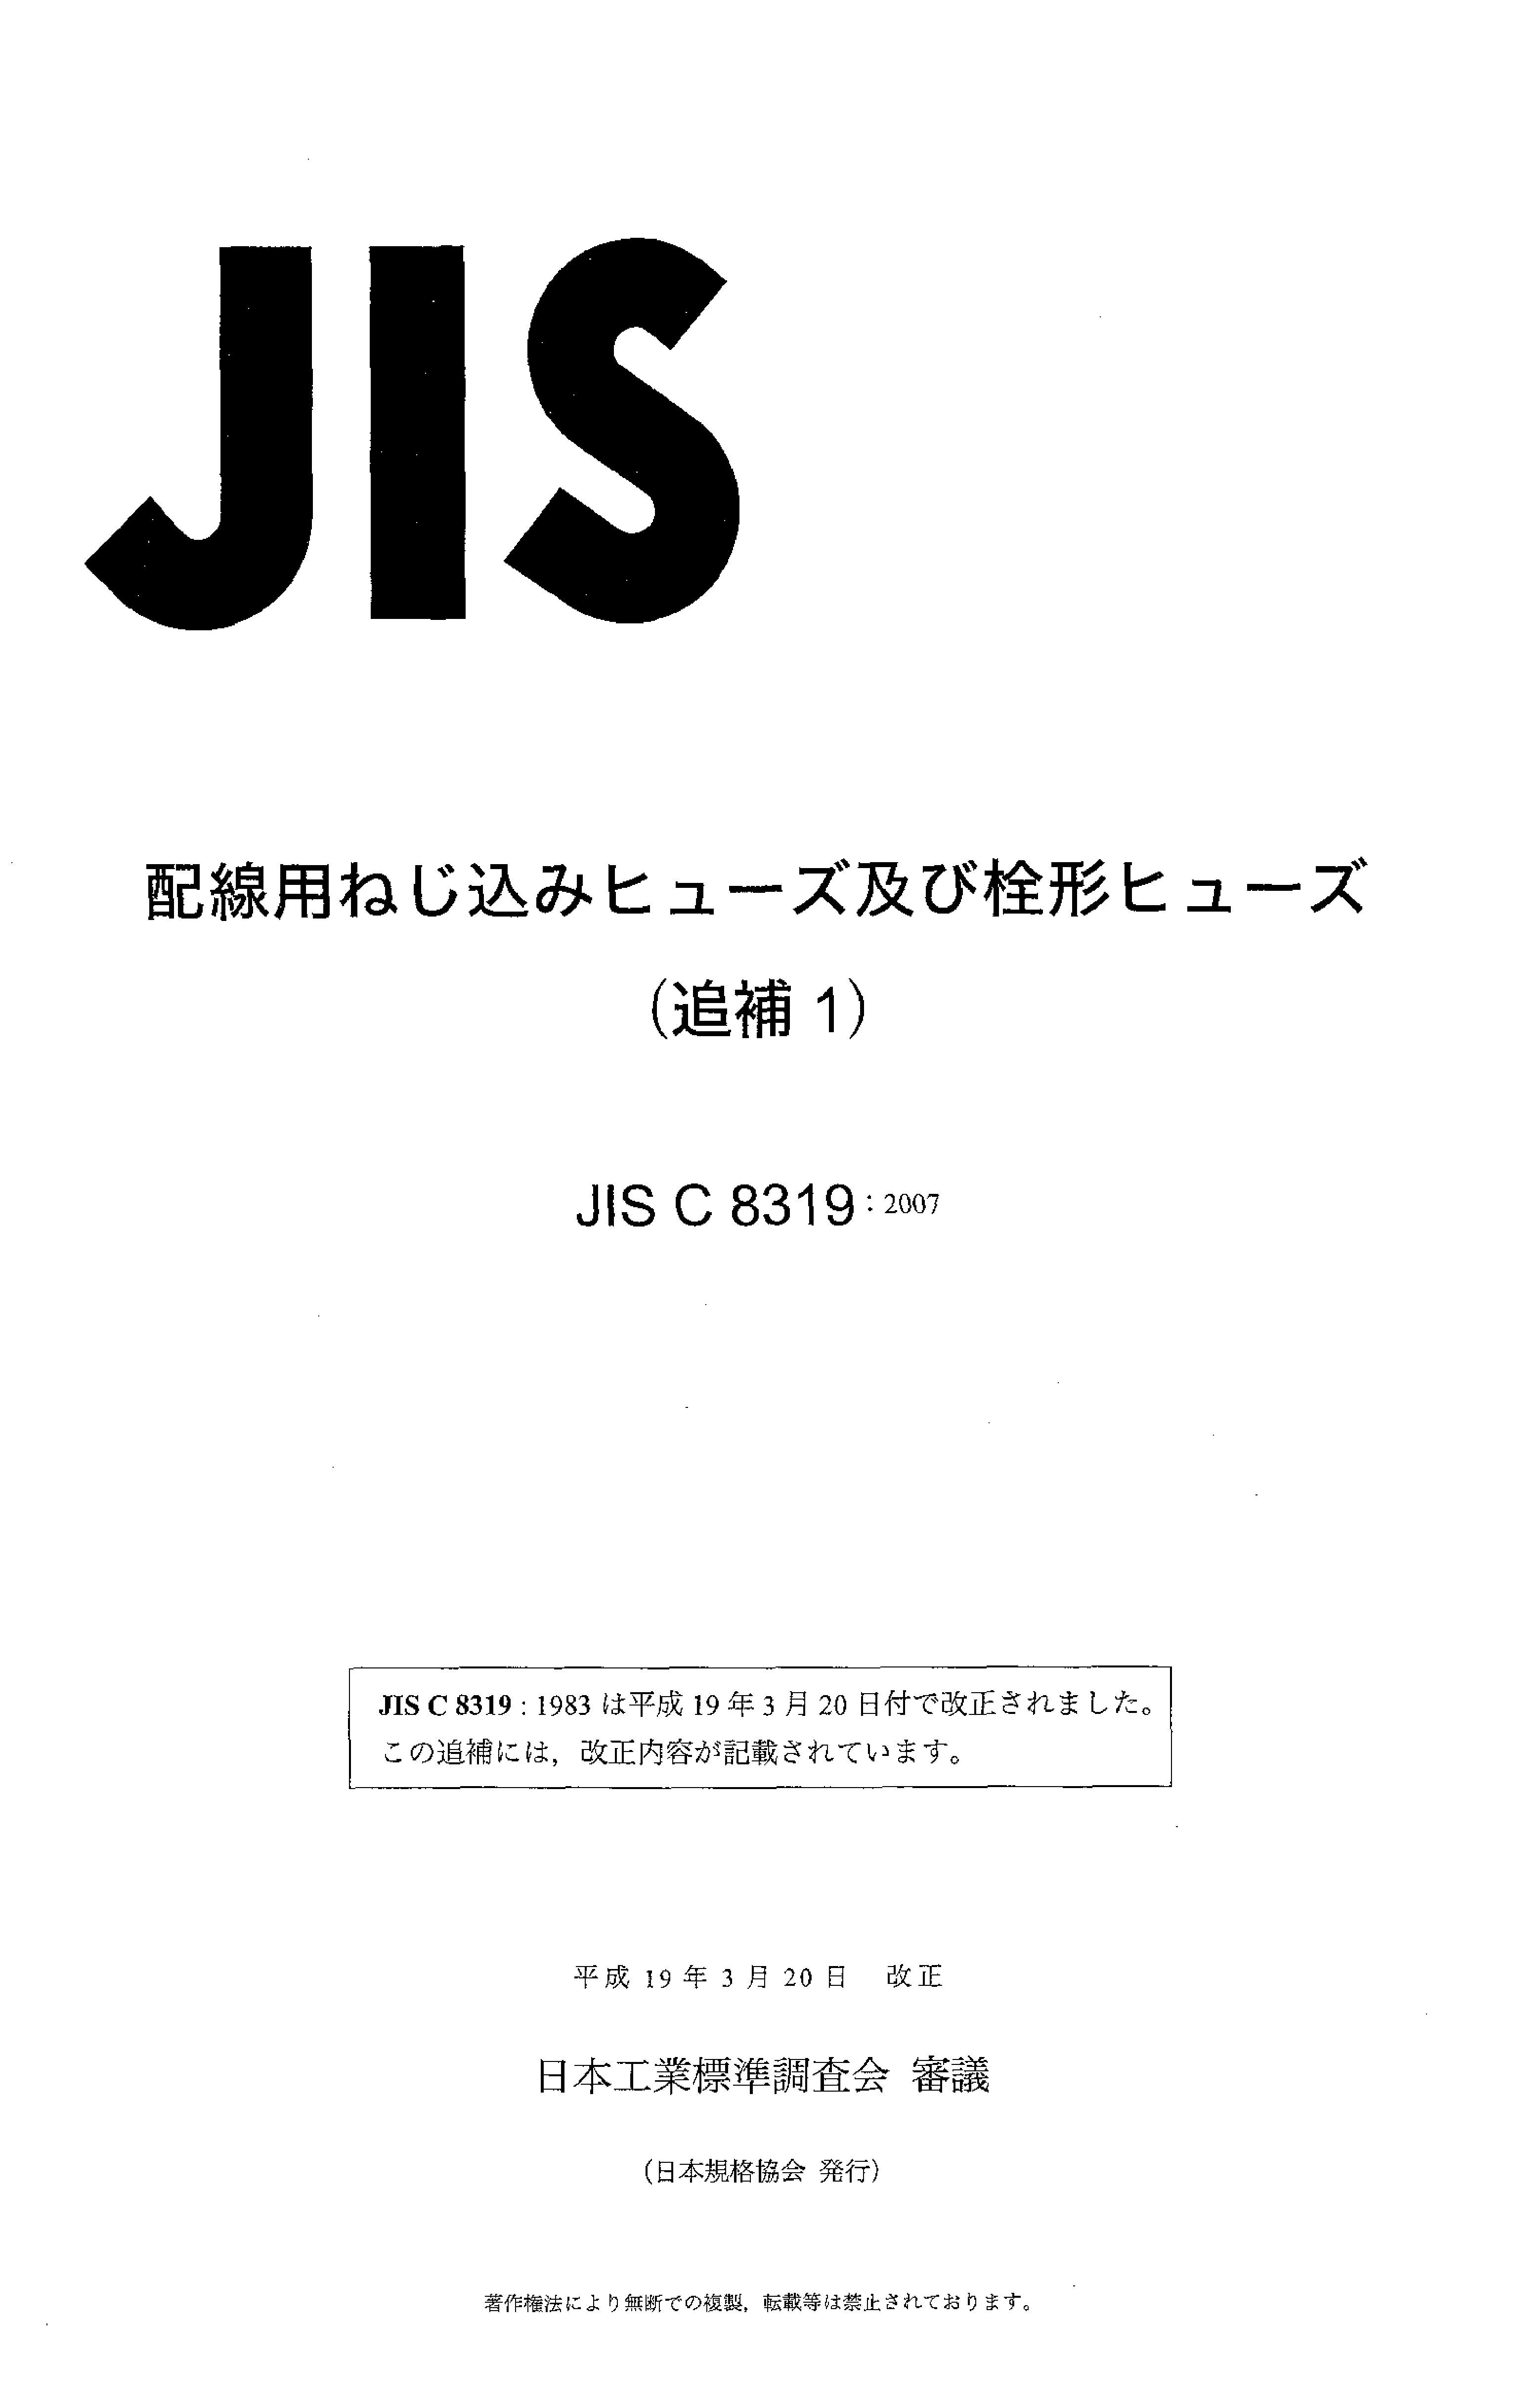 JIS C 8319 AMD 1:2007